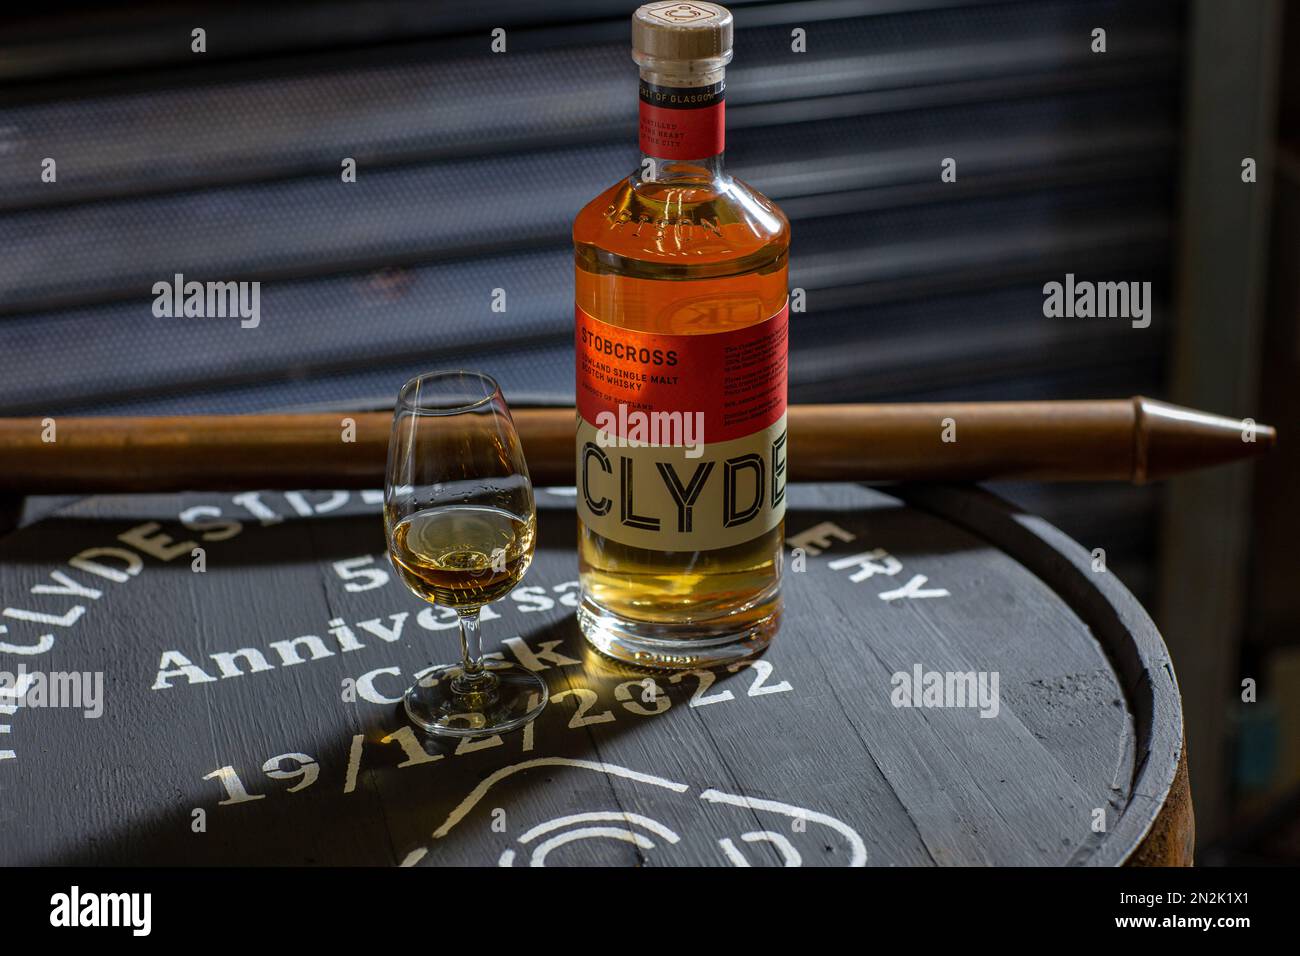 Clydeside Single Malt Whisky Flasche mit Glas o Fass mit Kupfer Valinch Spiritus Probenahmewerkzeug in der Clydeside Destillerie in Glasgow, Schottland. Stockfoto